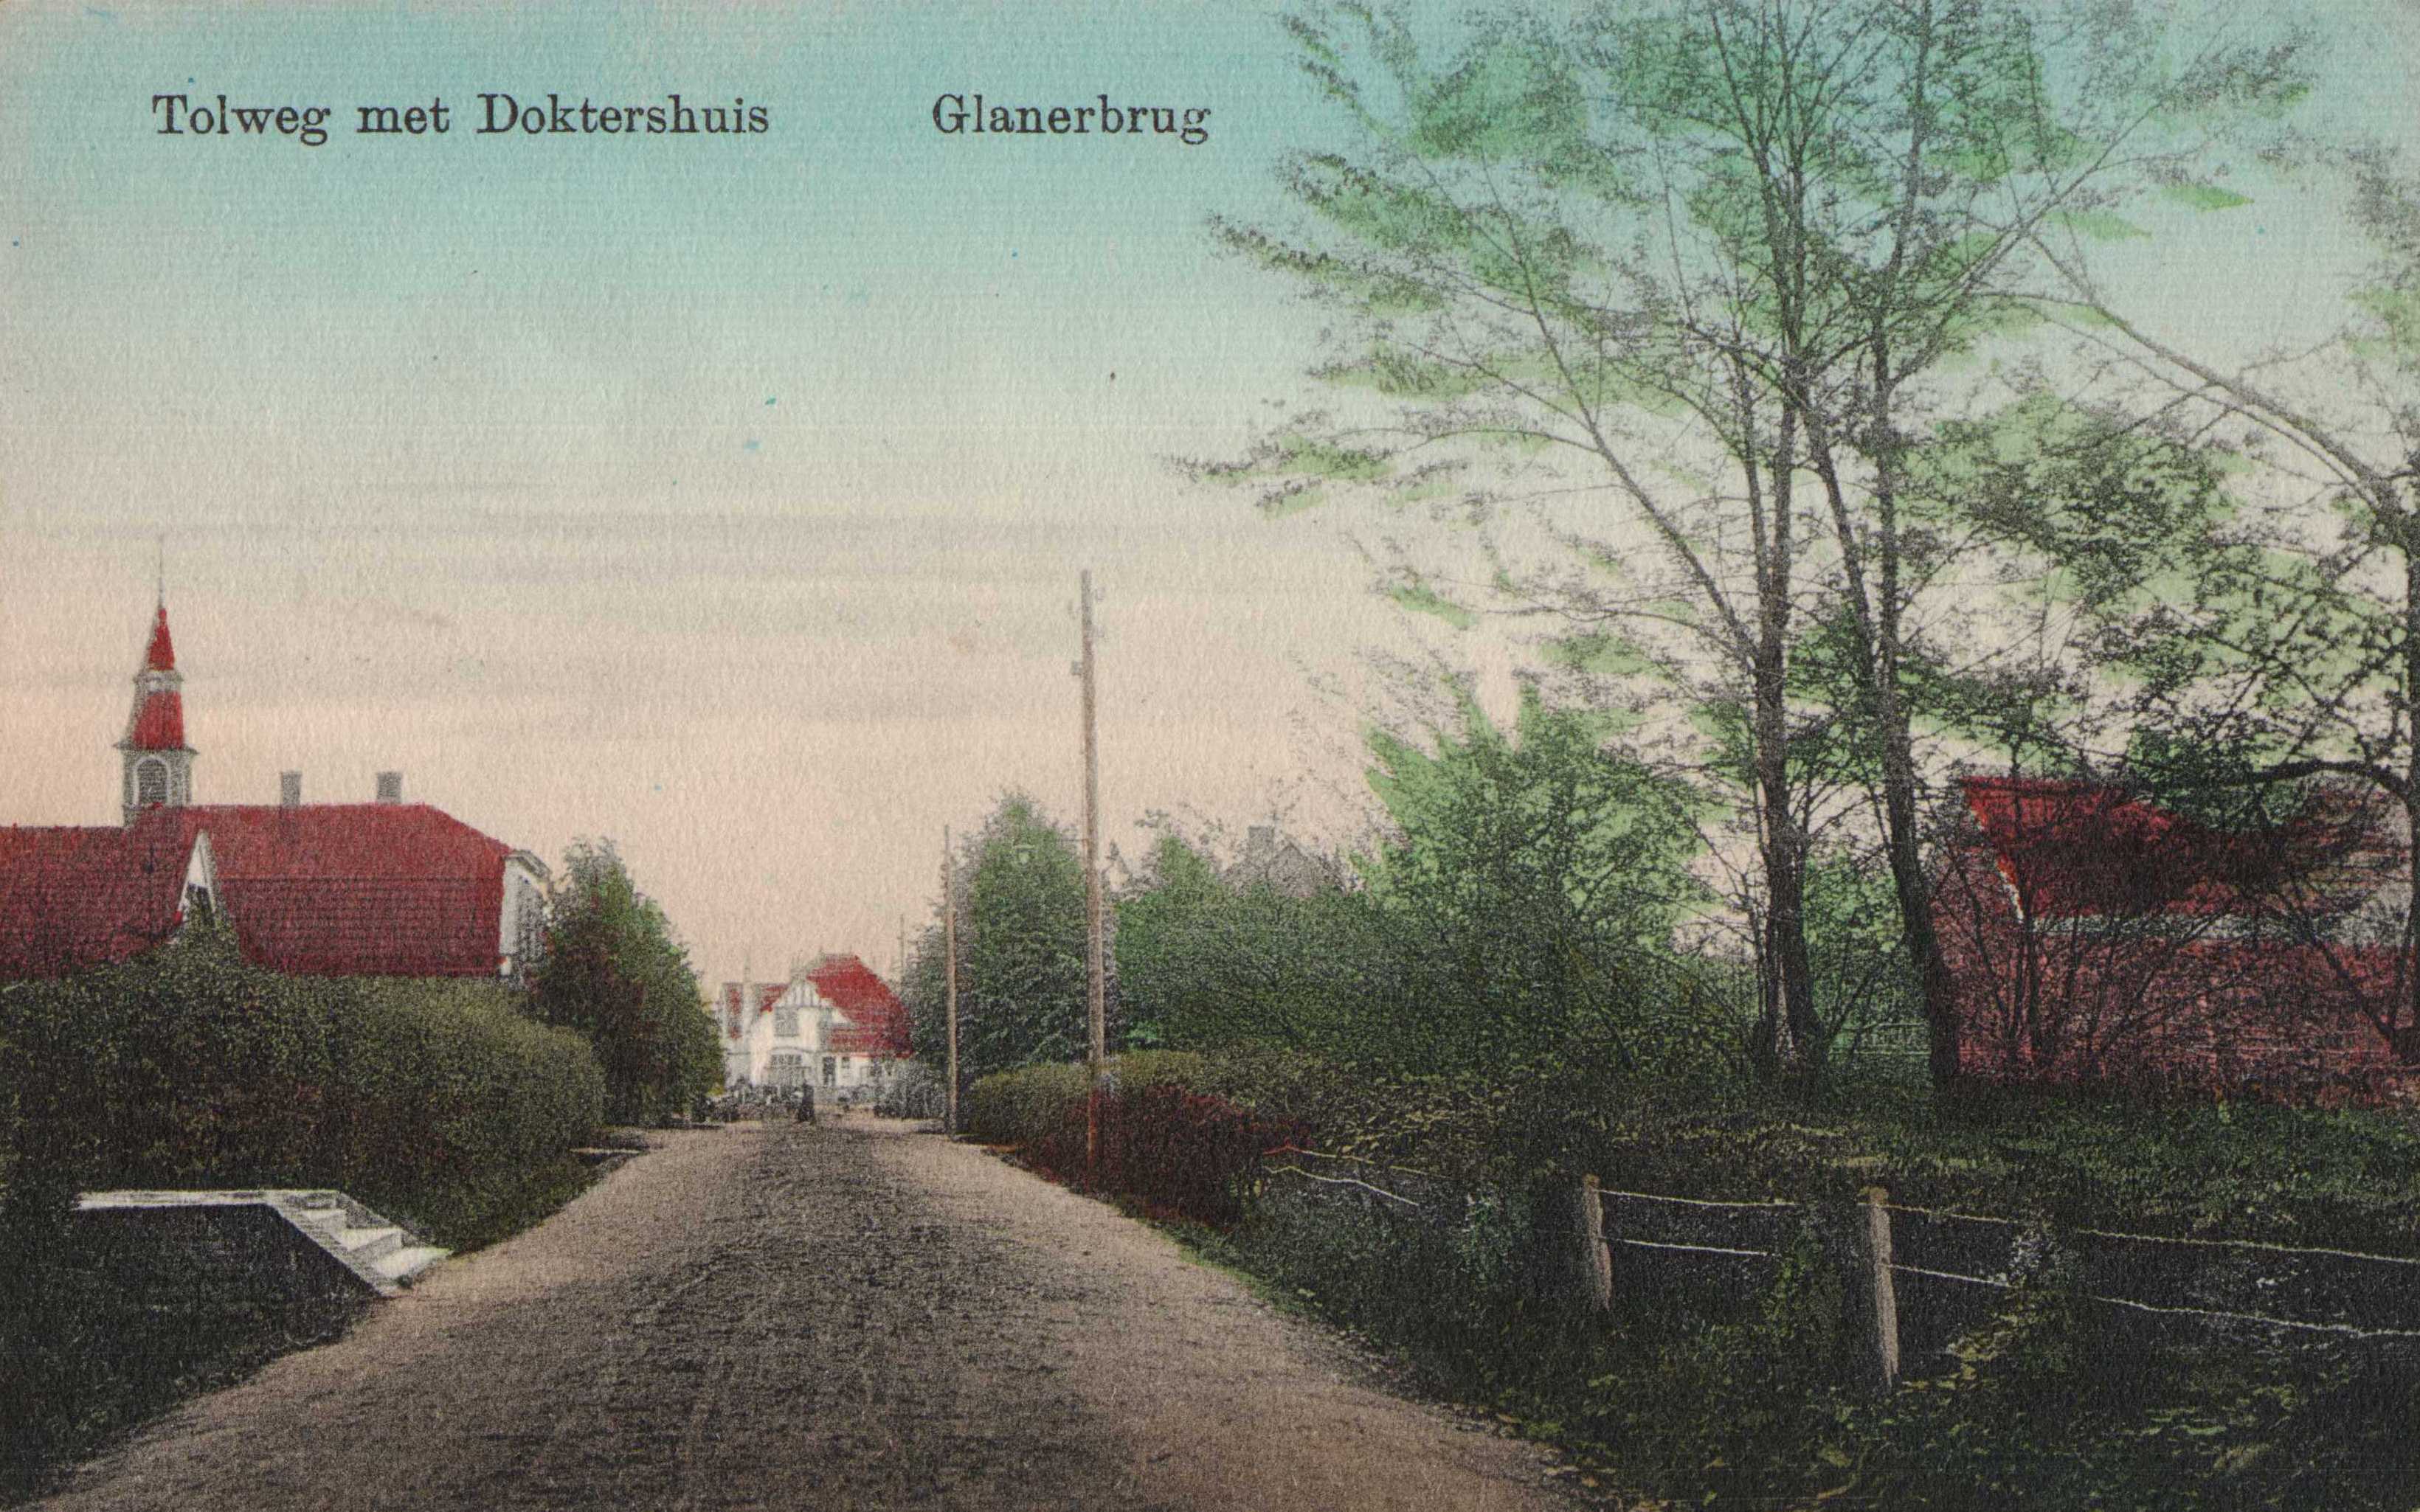 Tolweg-met-doktershuis-glanerbrug-1913-e903eb4a.jpg